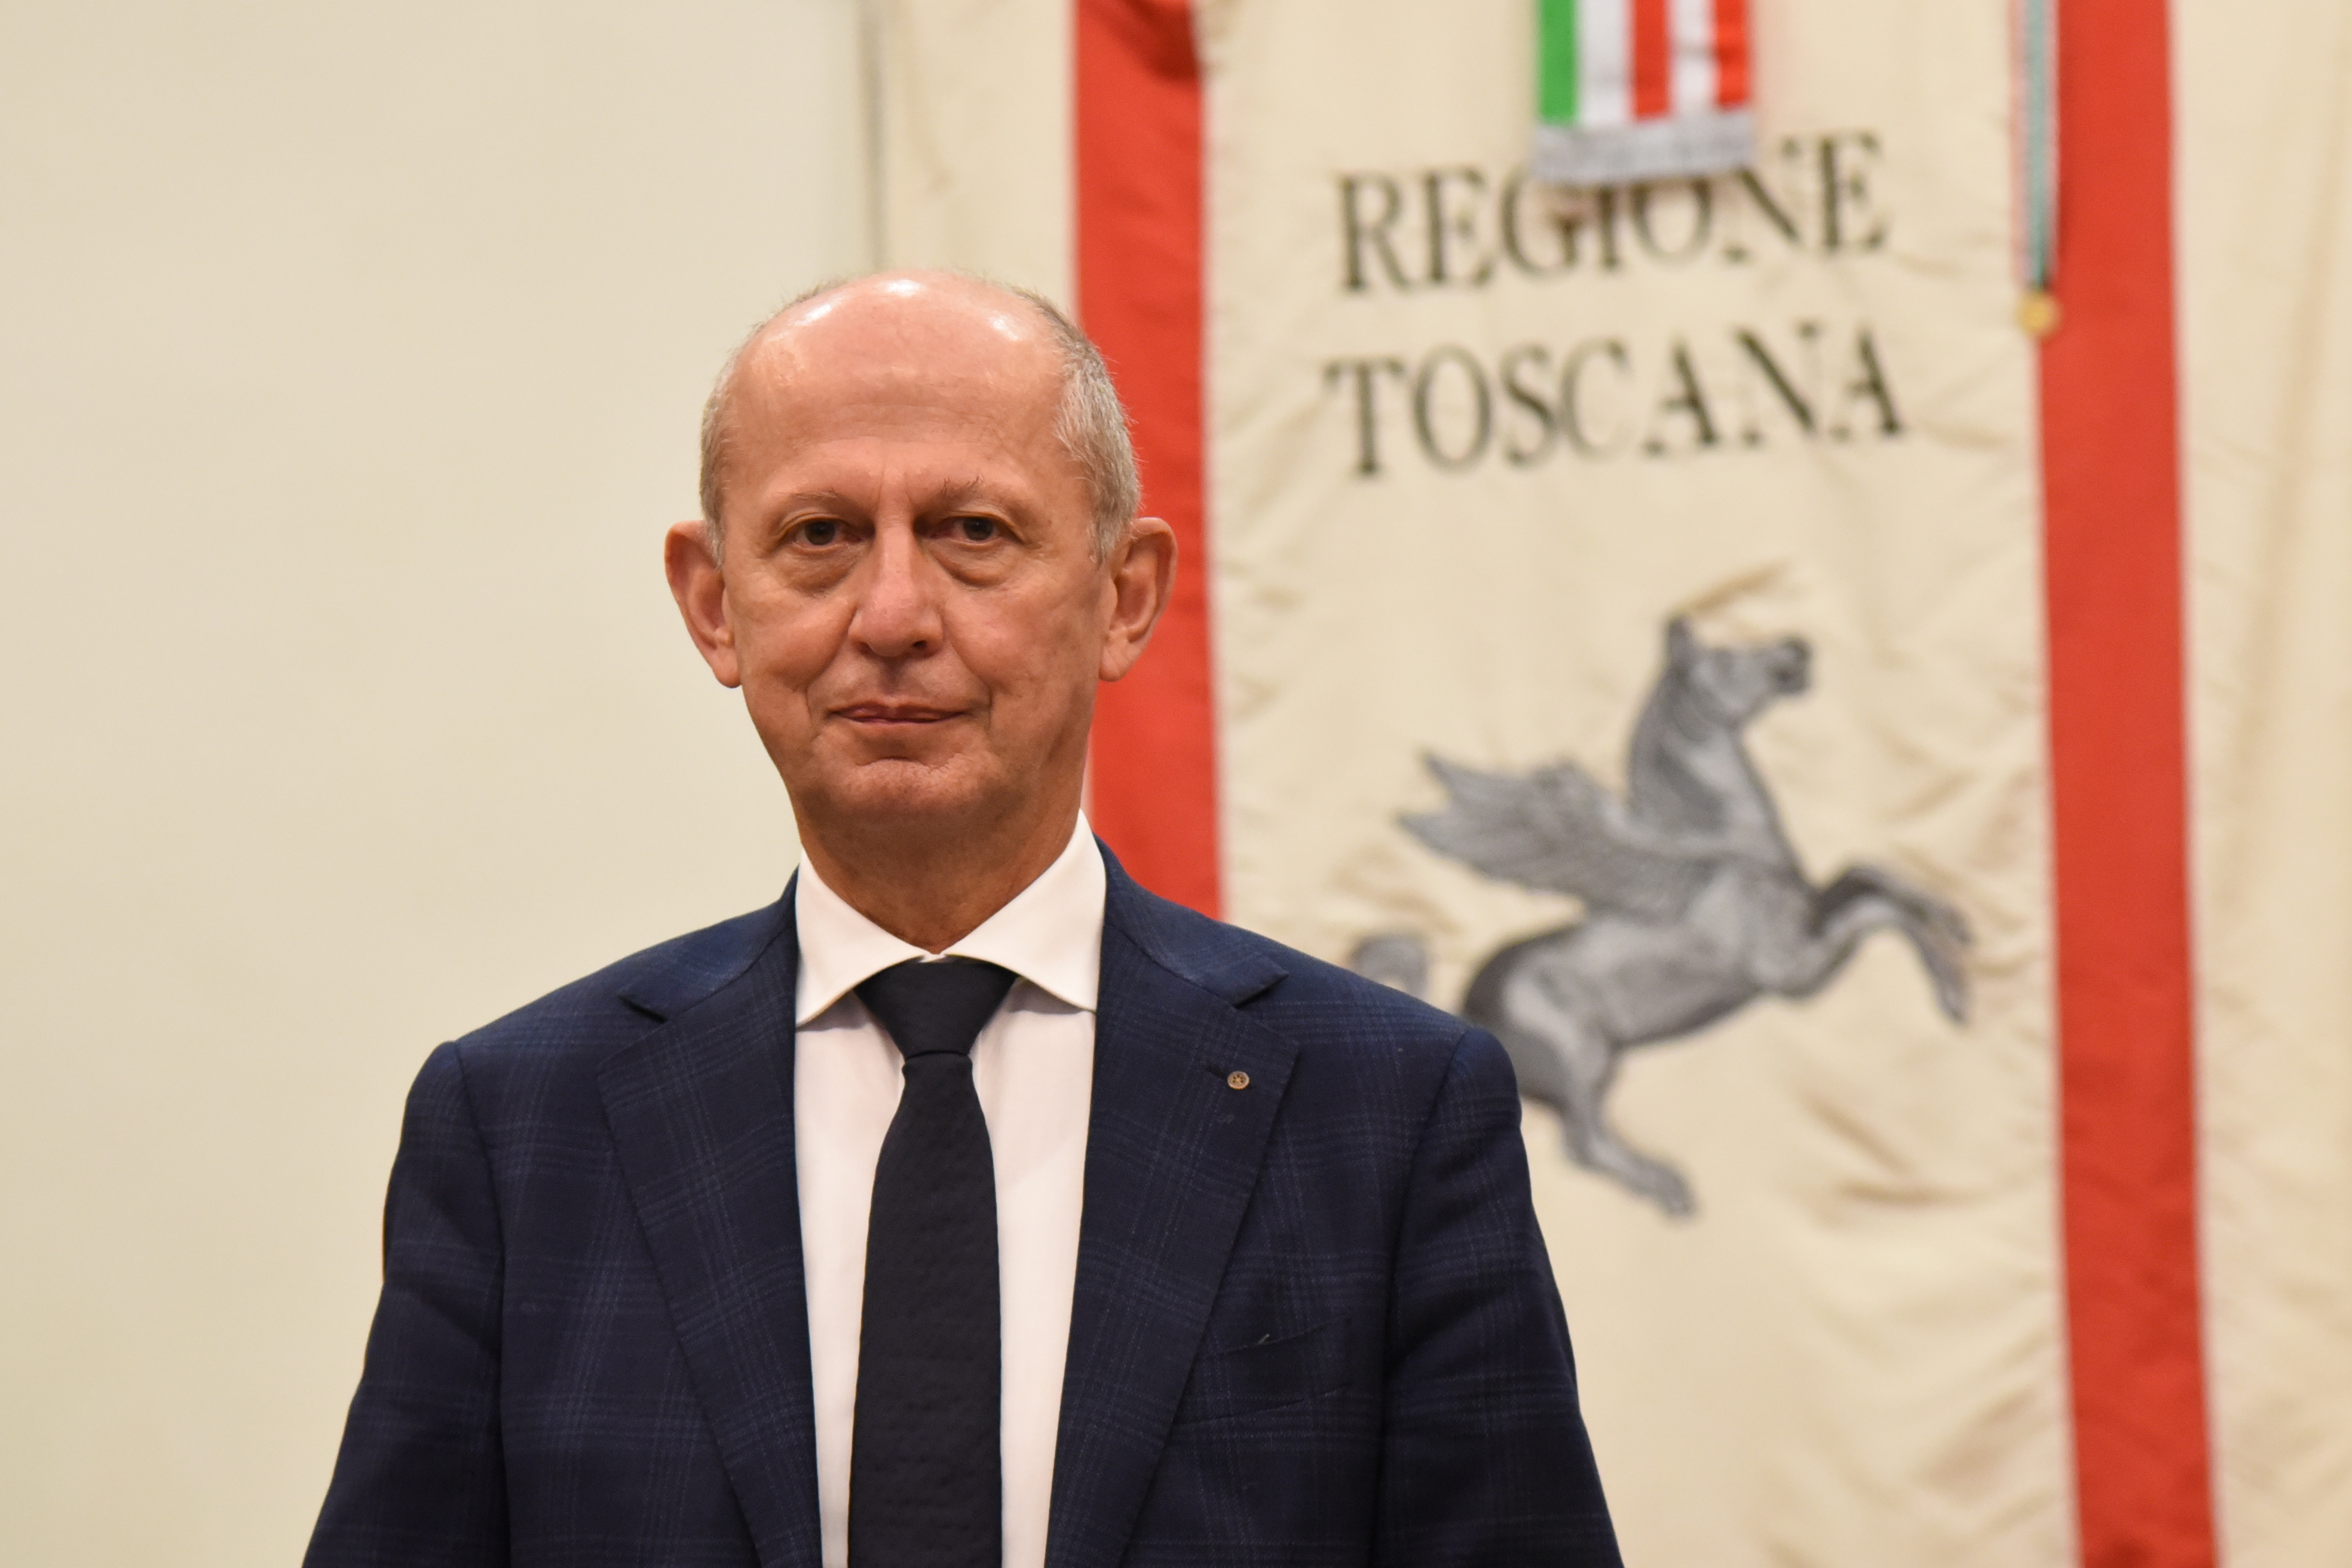 Accoglienza migranti: l'assessore Ciuoffo risponde al sindaco di Pistoia